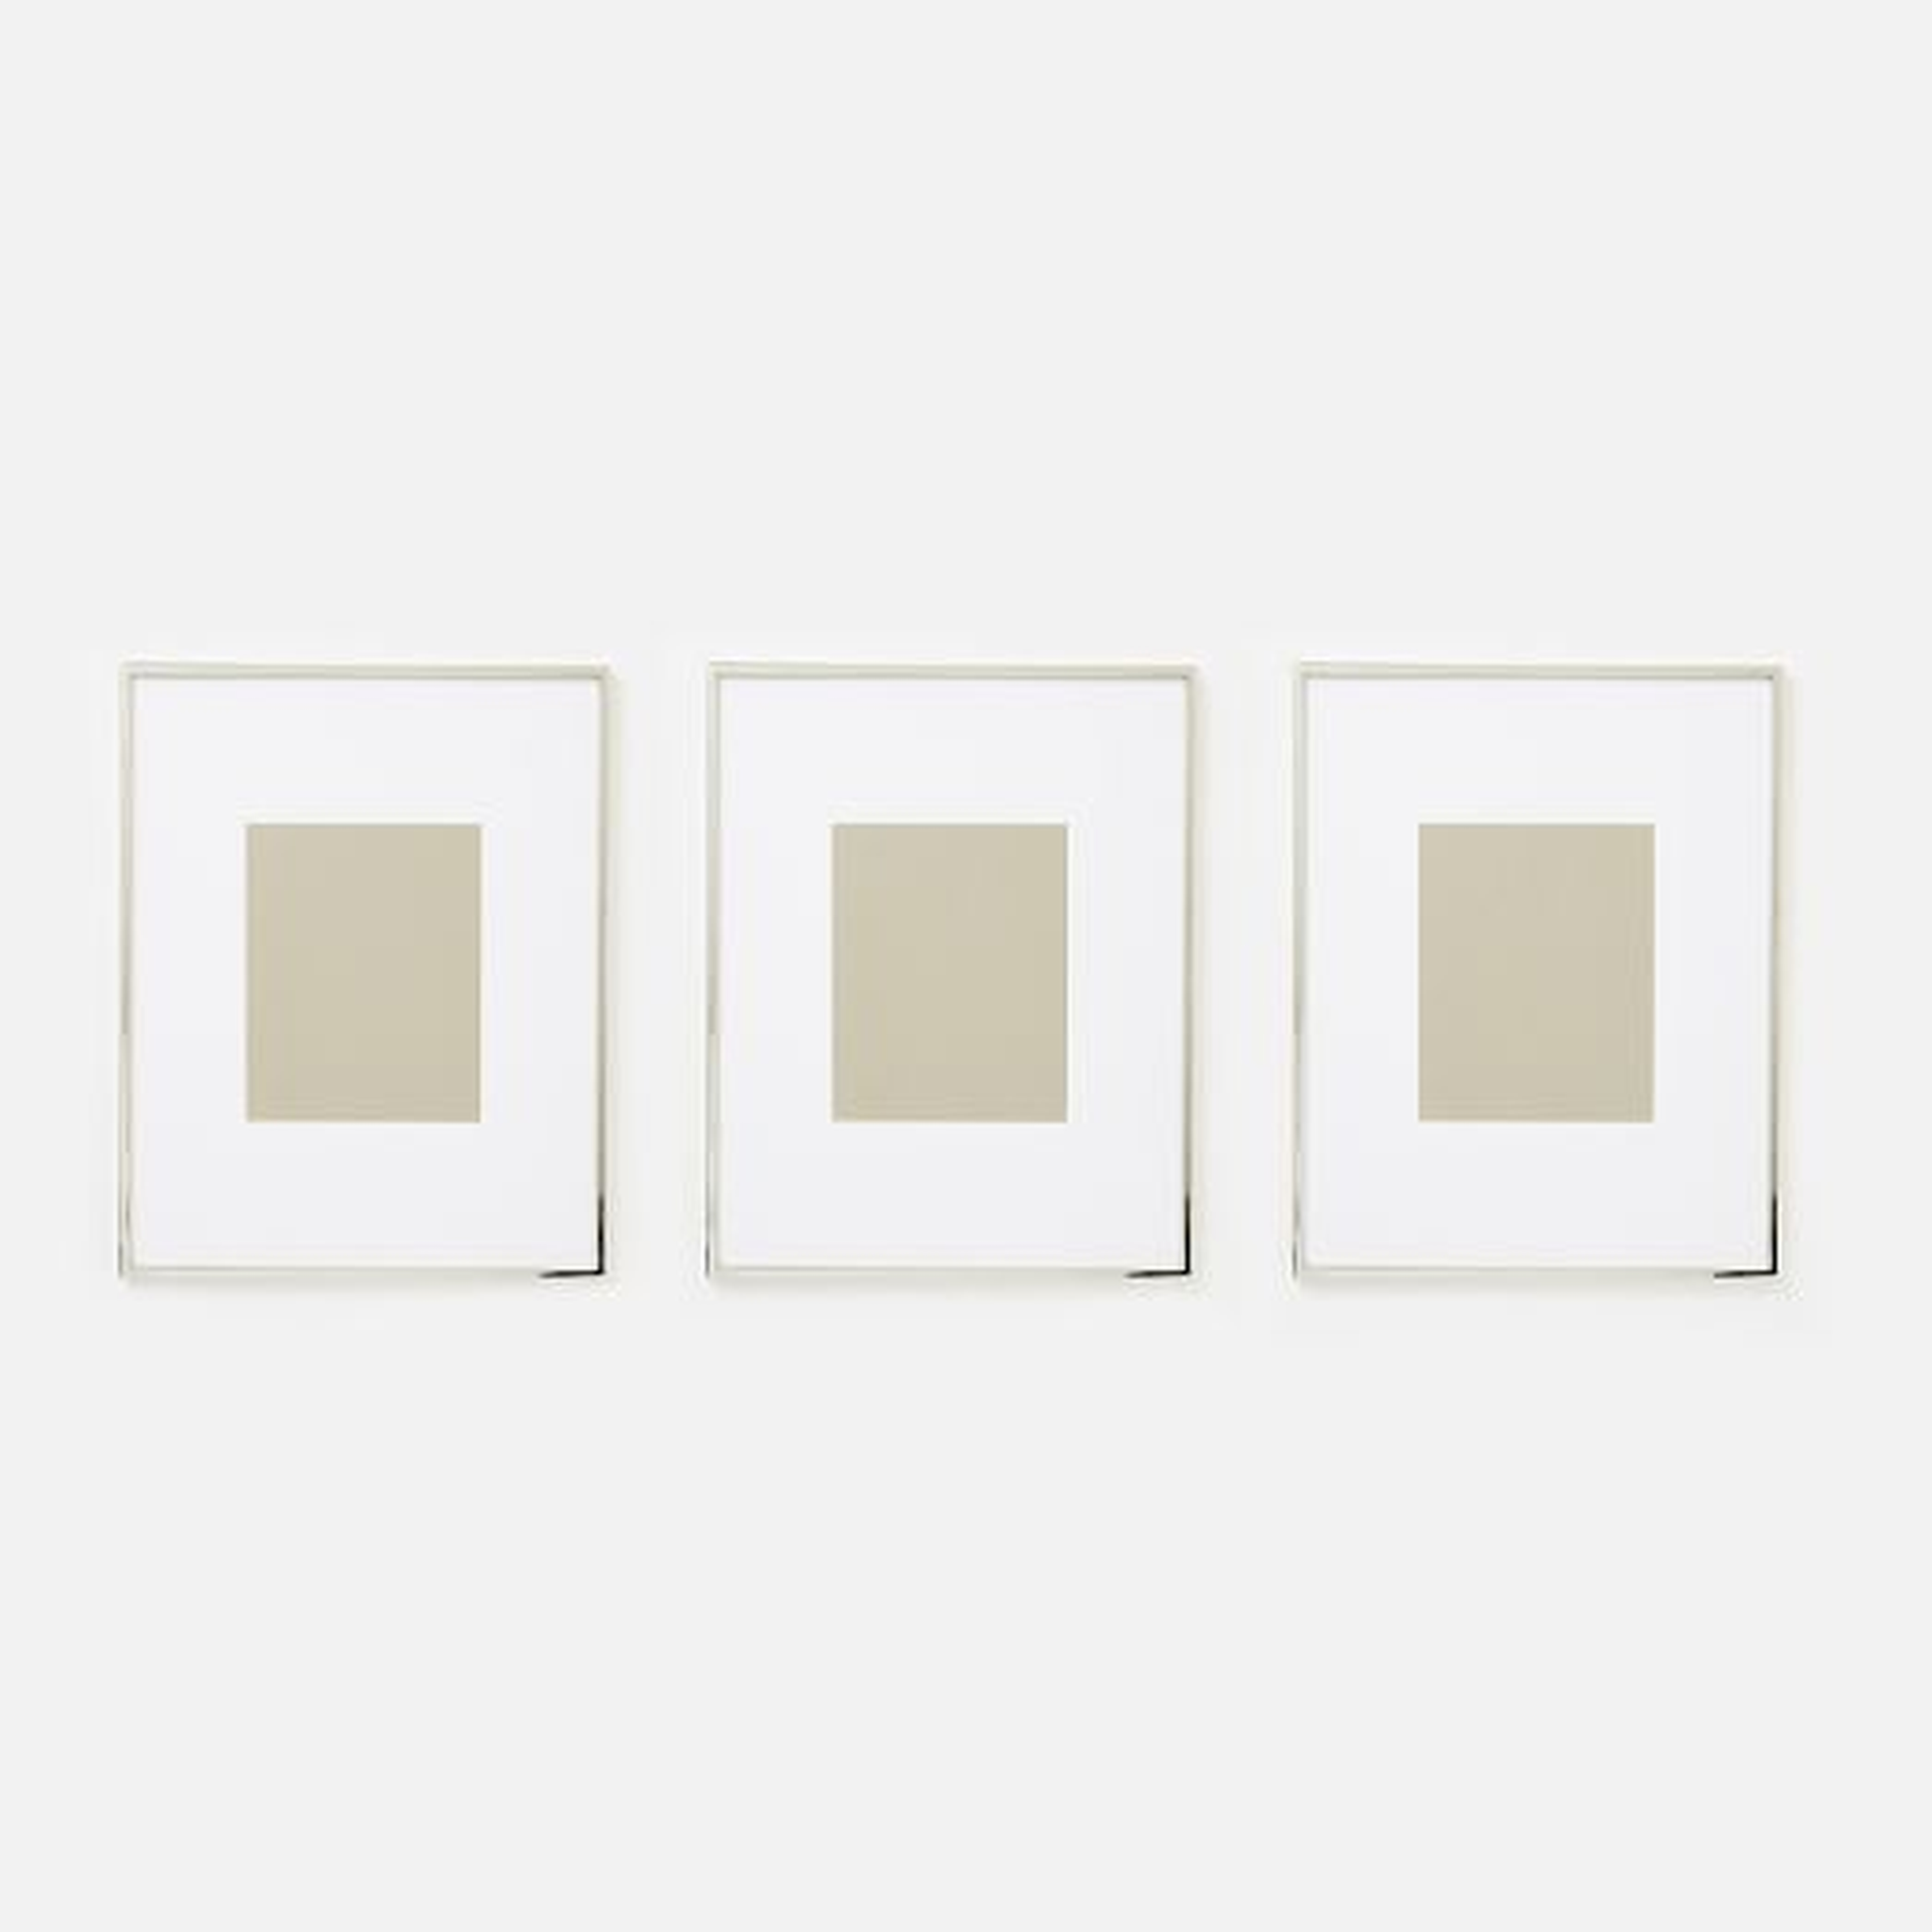 Gallery Frames - Polished Nickel- Set of 3 - West Elm